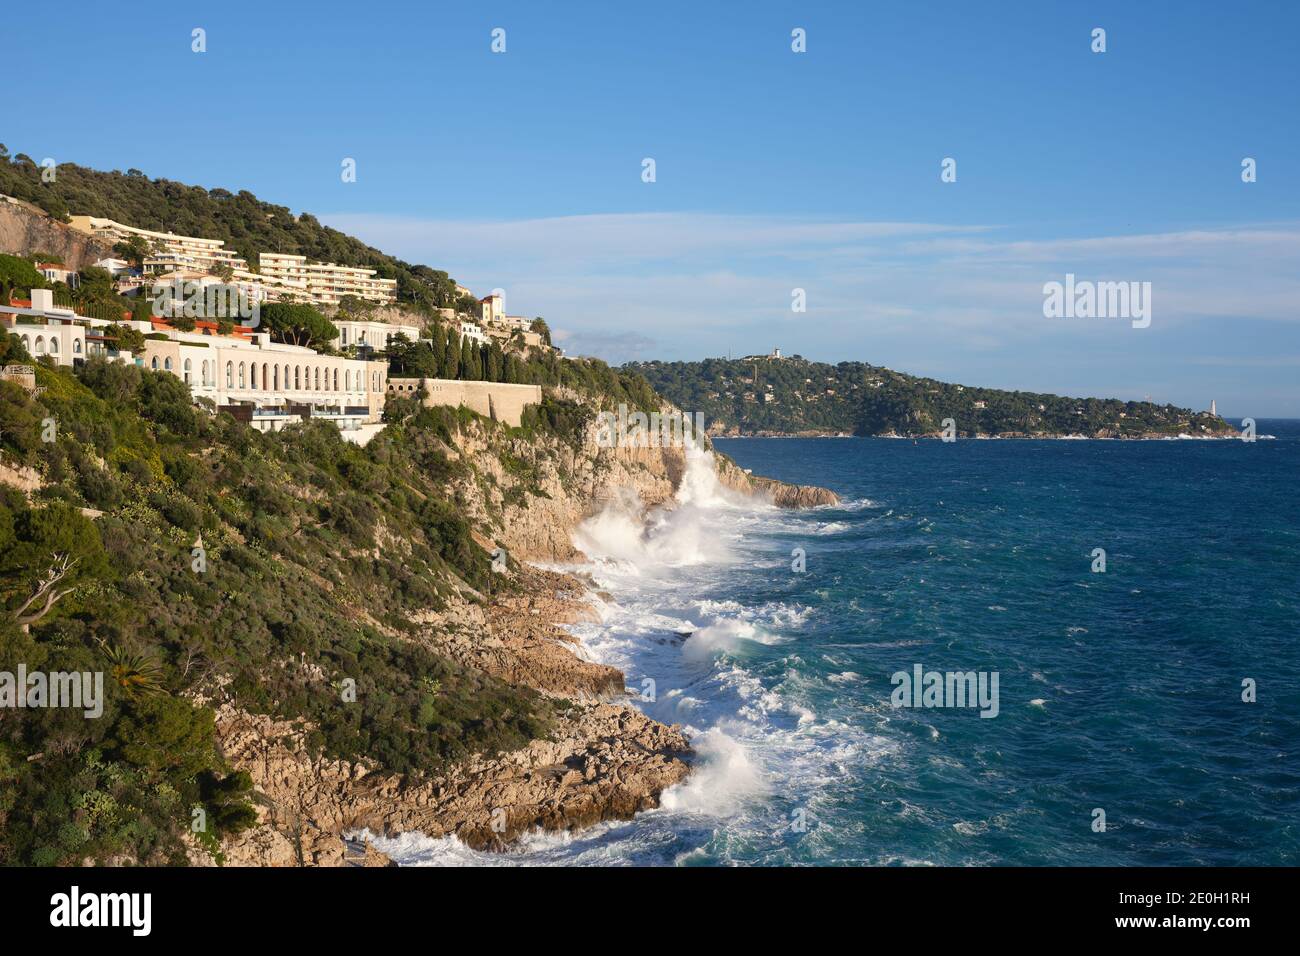 L'hiver, de grandes vagues s'écrasant sur un promontoire rocheux dans la ville de Nice. Côte d'Azur, France. Banque D'Images